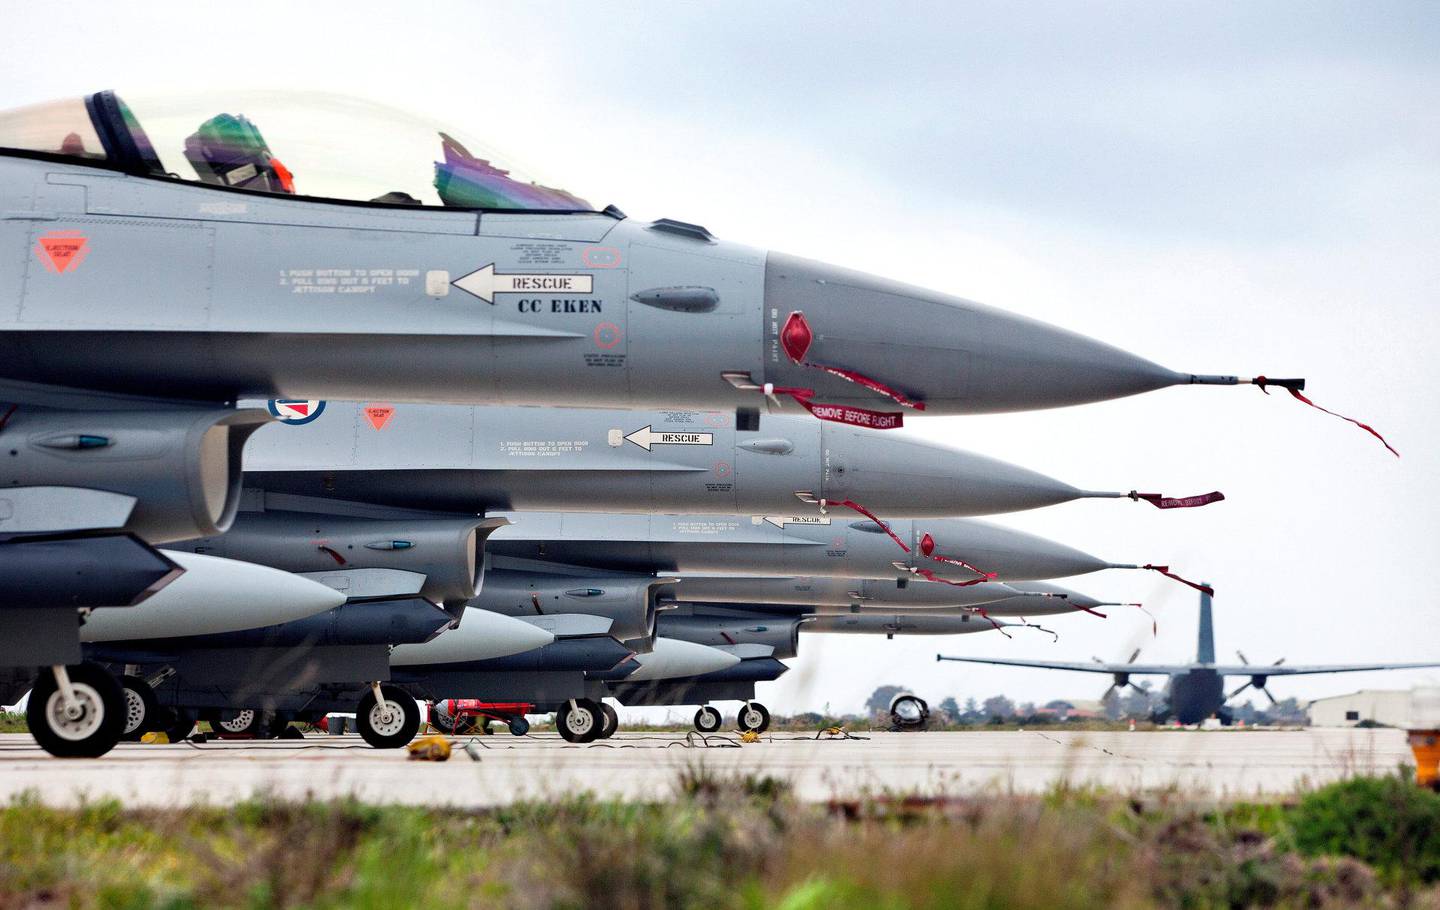 LIBYA: Norske jagerfly slapp 588 bomber under den NATO-ledede krigen mot Libya i 2011.   Det er 100 ganger mer enn i alle bombeangrepene Norge gjennomførte mellom 1945 og 2011, skriver Rødt-leder Bjørnar Moxnes. FOTO: LARS MAGNE HOVTUN/NTB SCANPIX